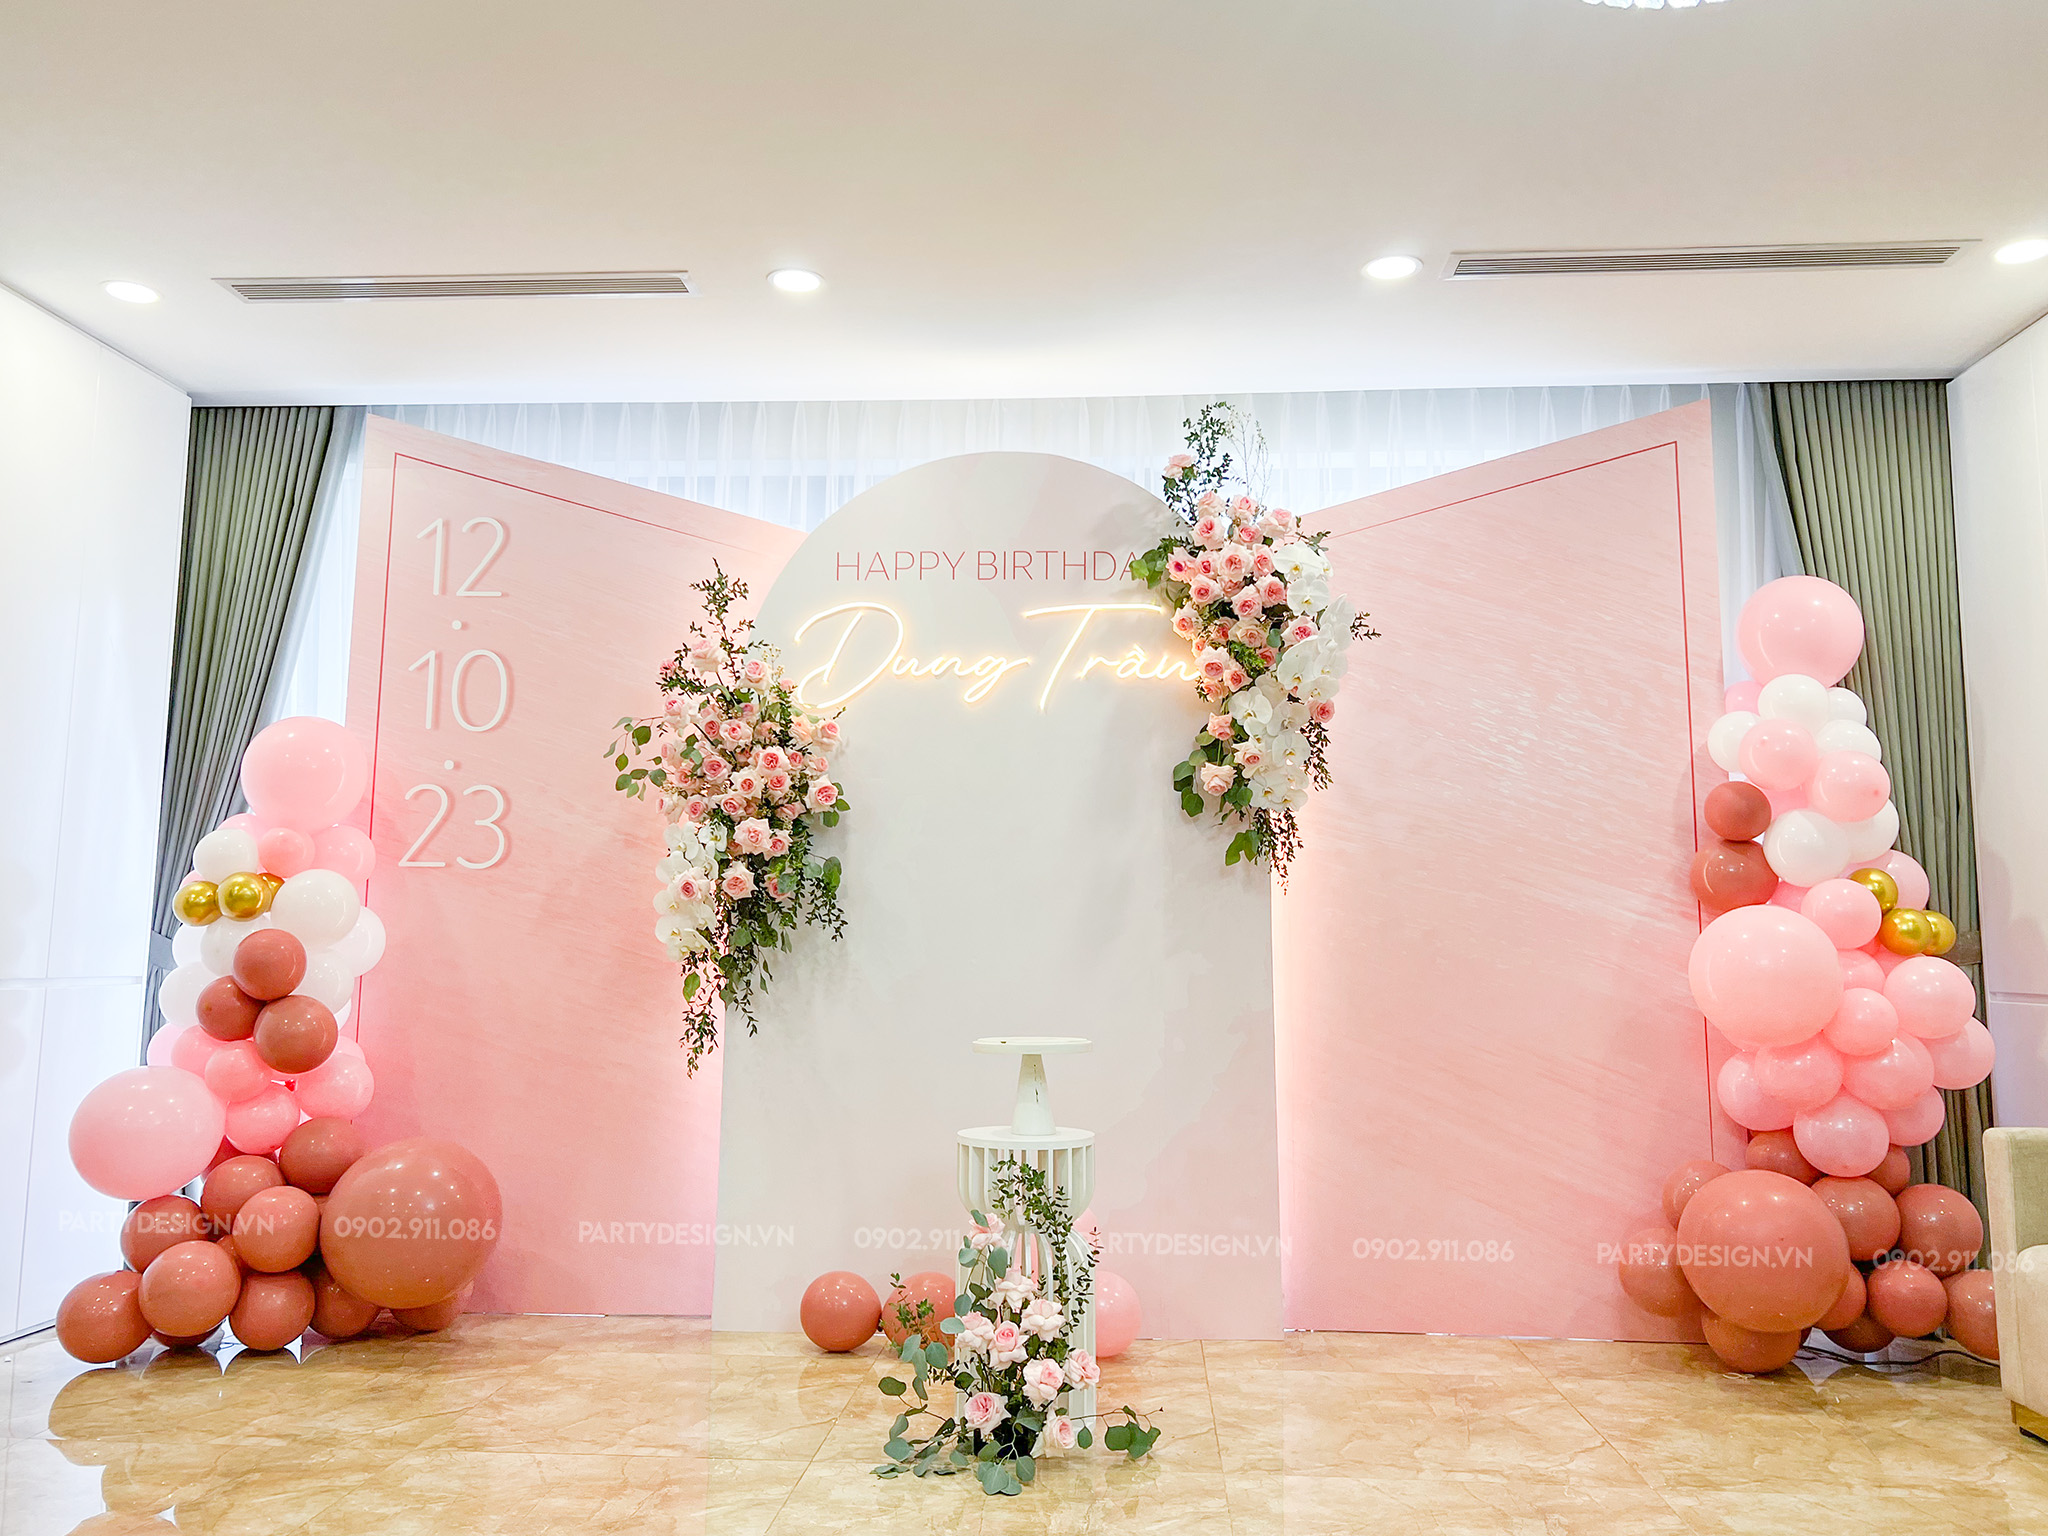 Trang trí sinh nhật người lớn tone hồng, trắng và hoa tươi - chị Dung Trần-partydesign.vn